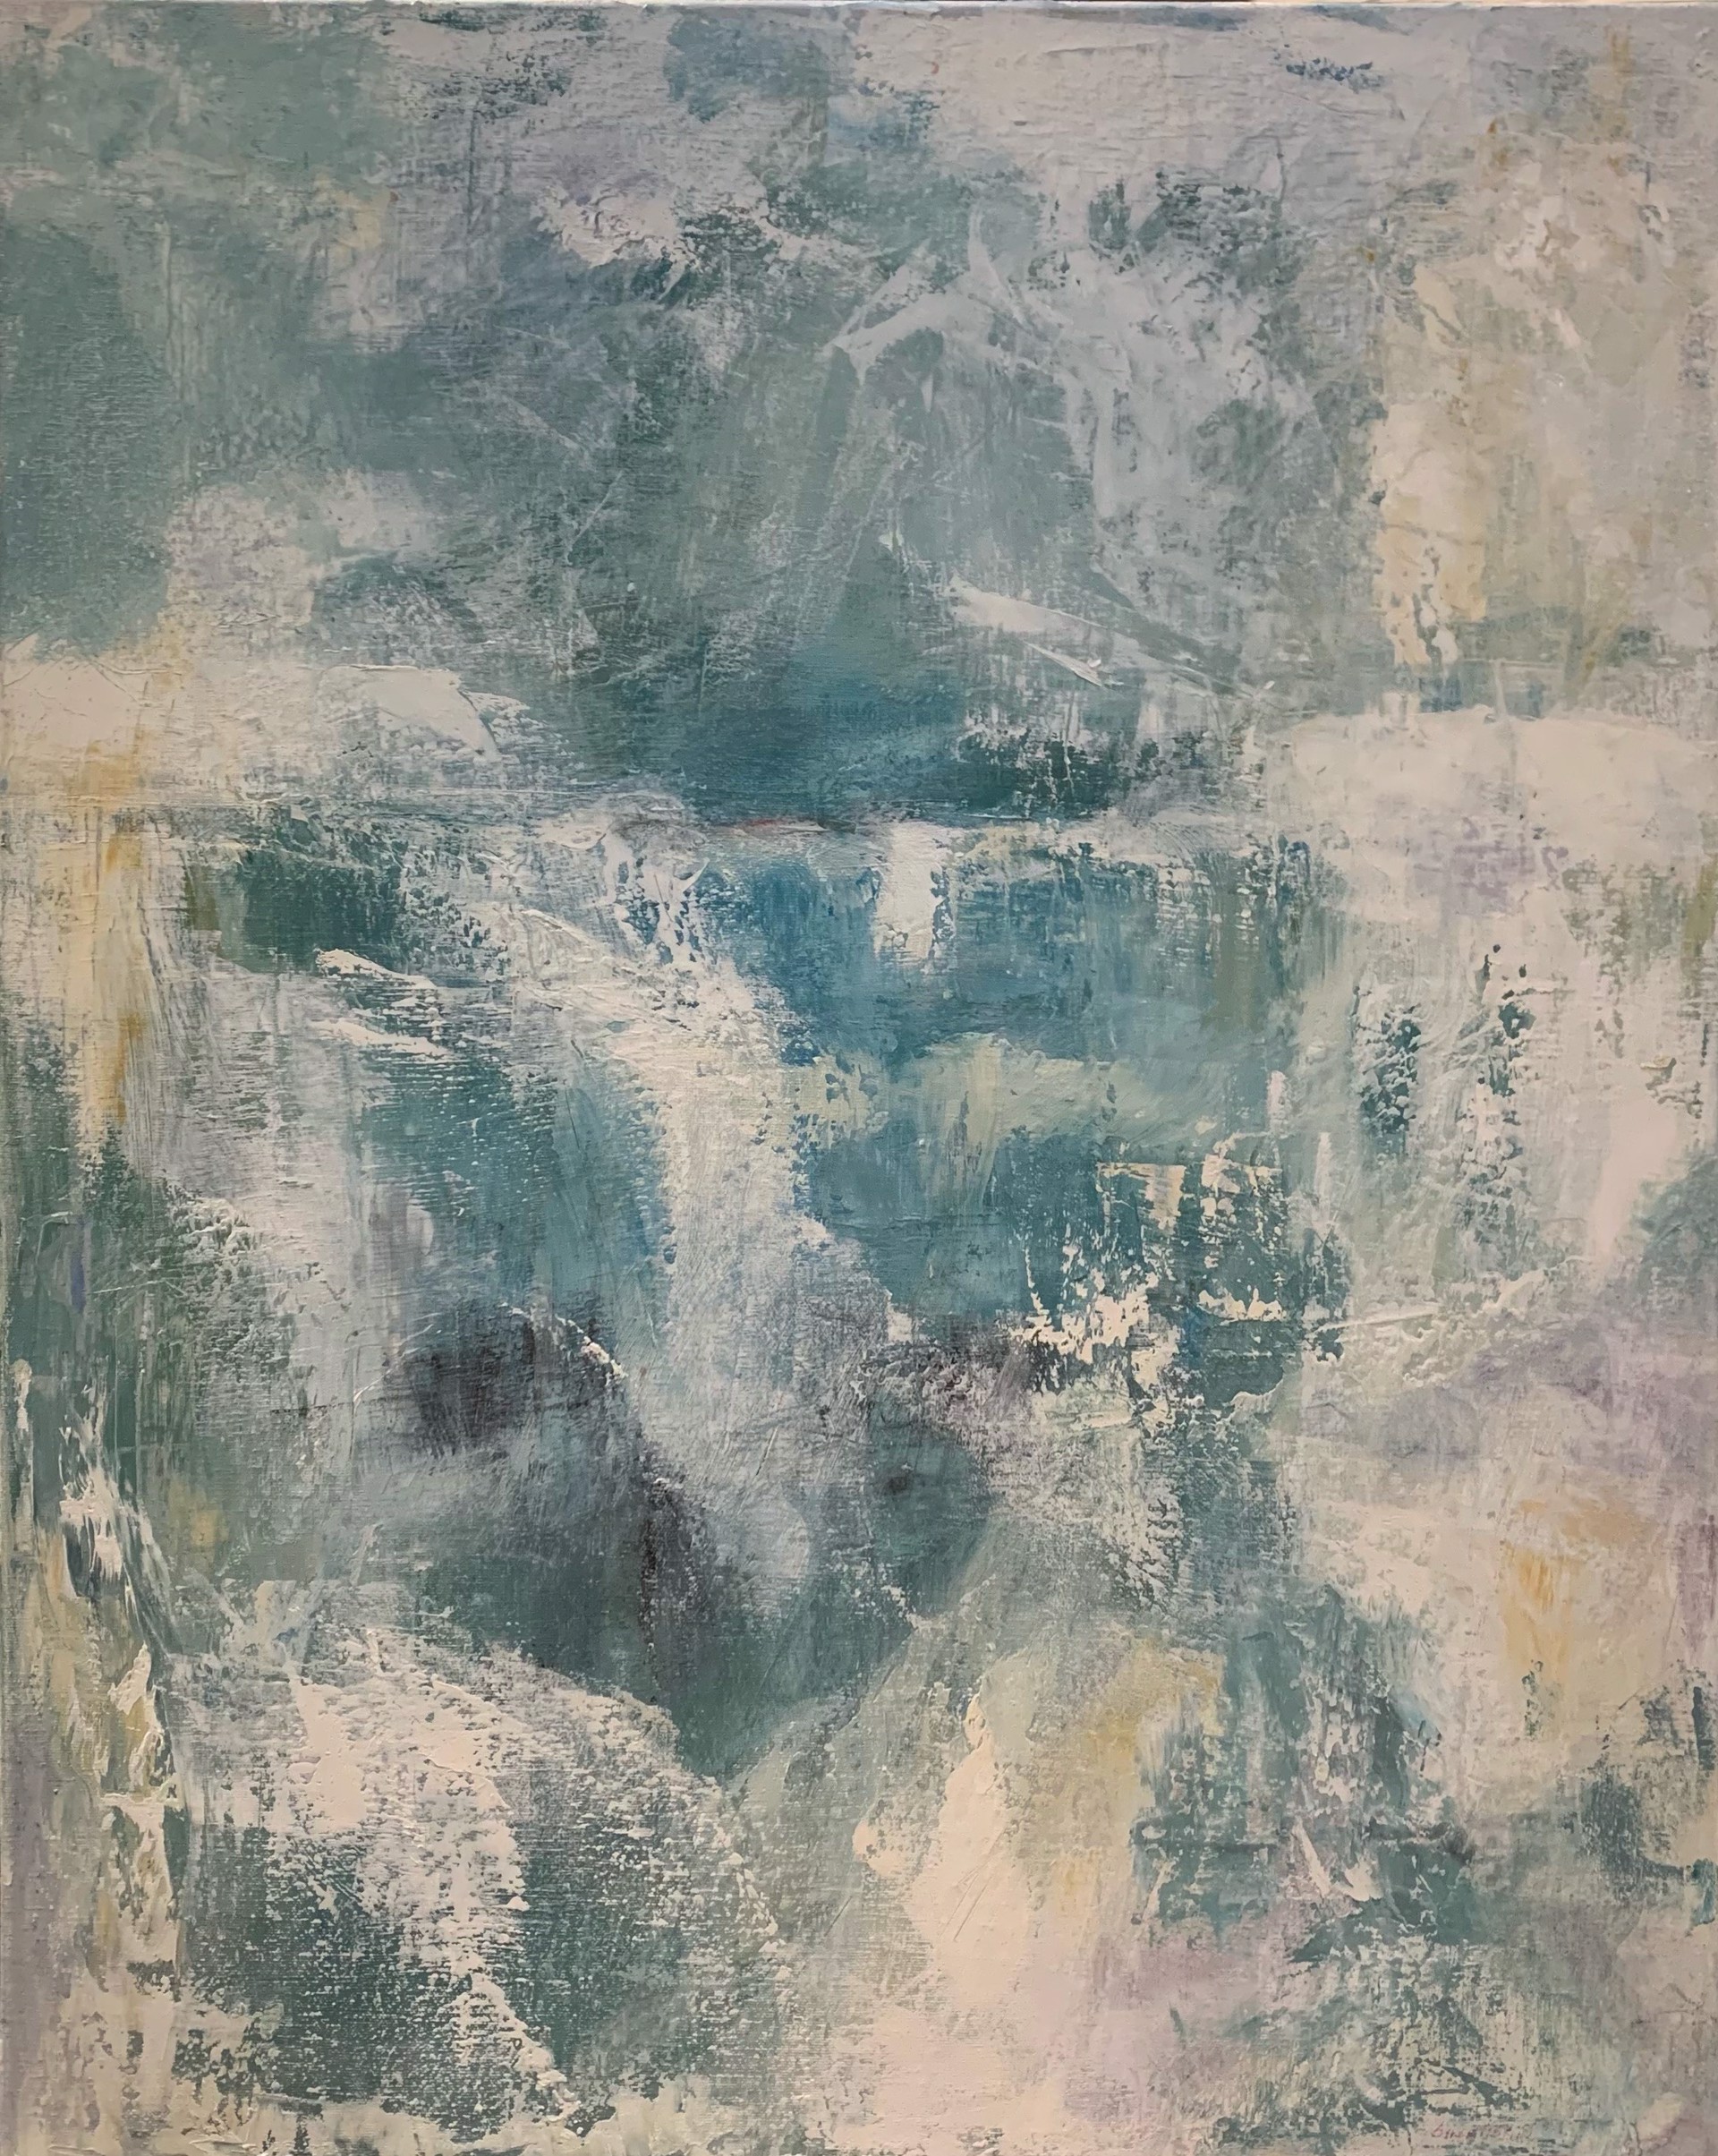 Abstract II by Liz Shepherd